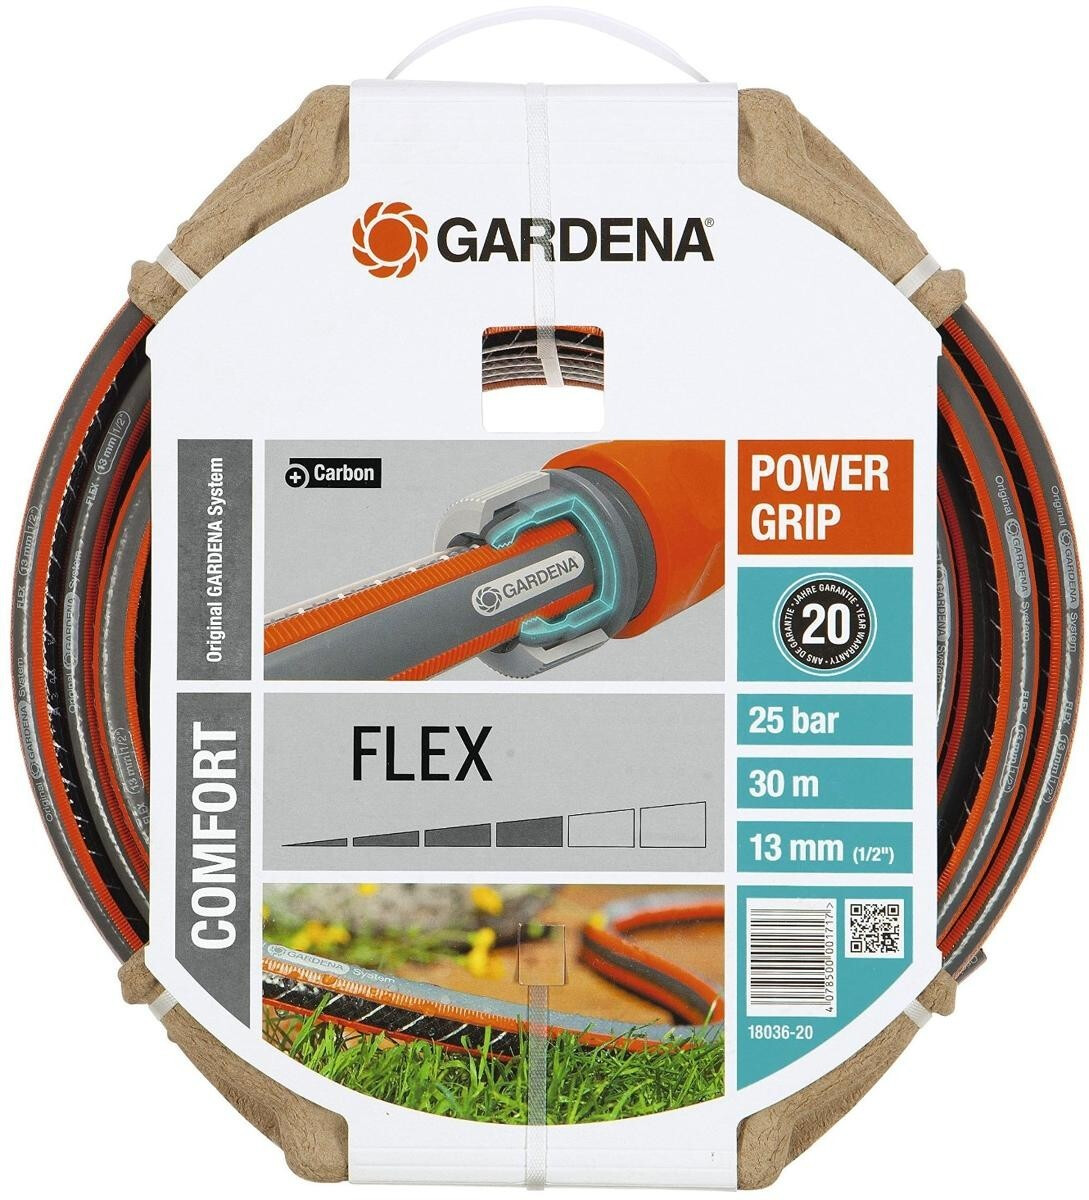 Gardena PVC-Schlauch Comfort Flex 1/2 - 30 m (18036-20) ab € 33,20